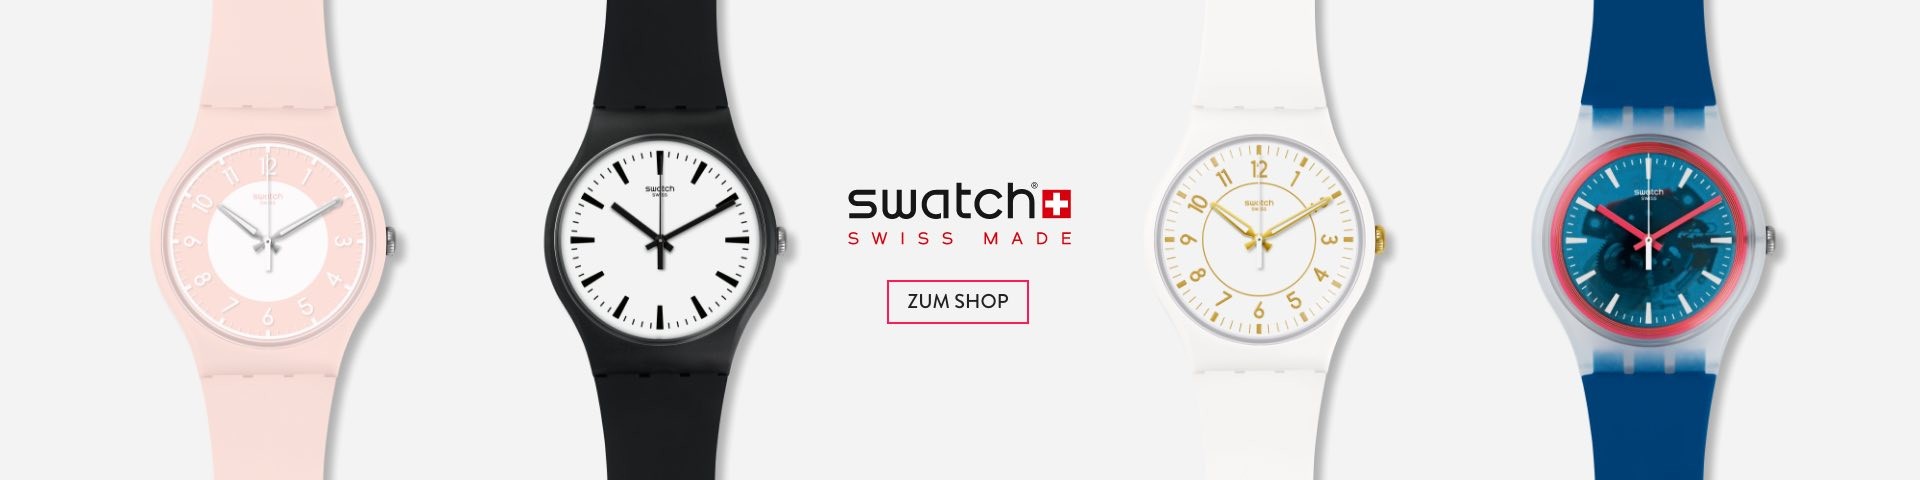 Swatch Pay Uhren Desktop DE